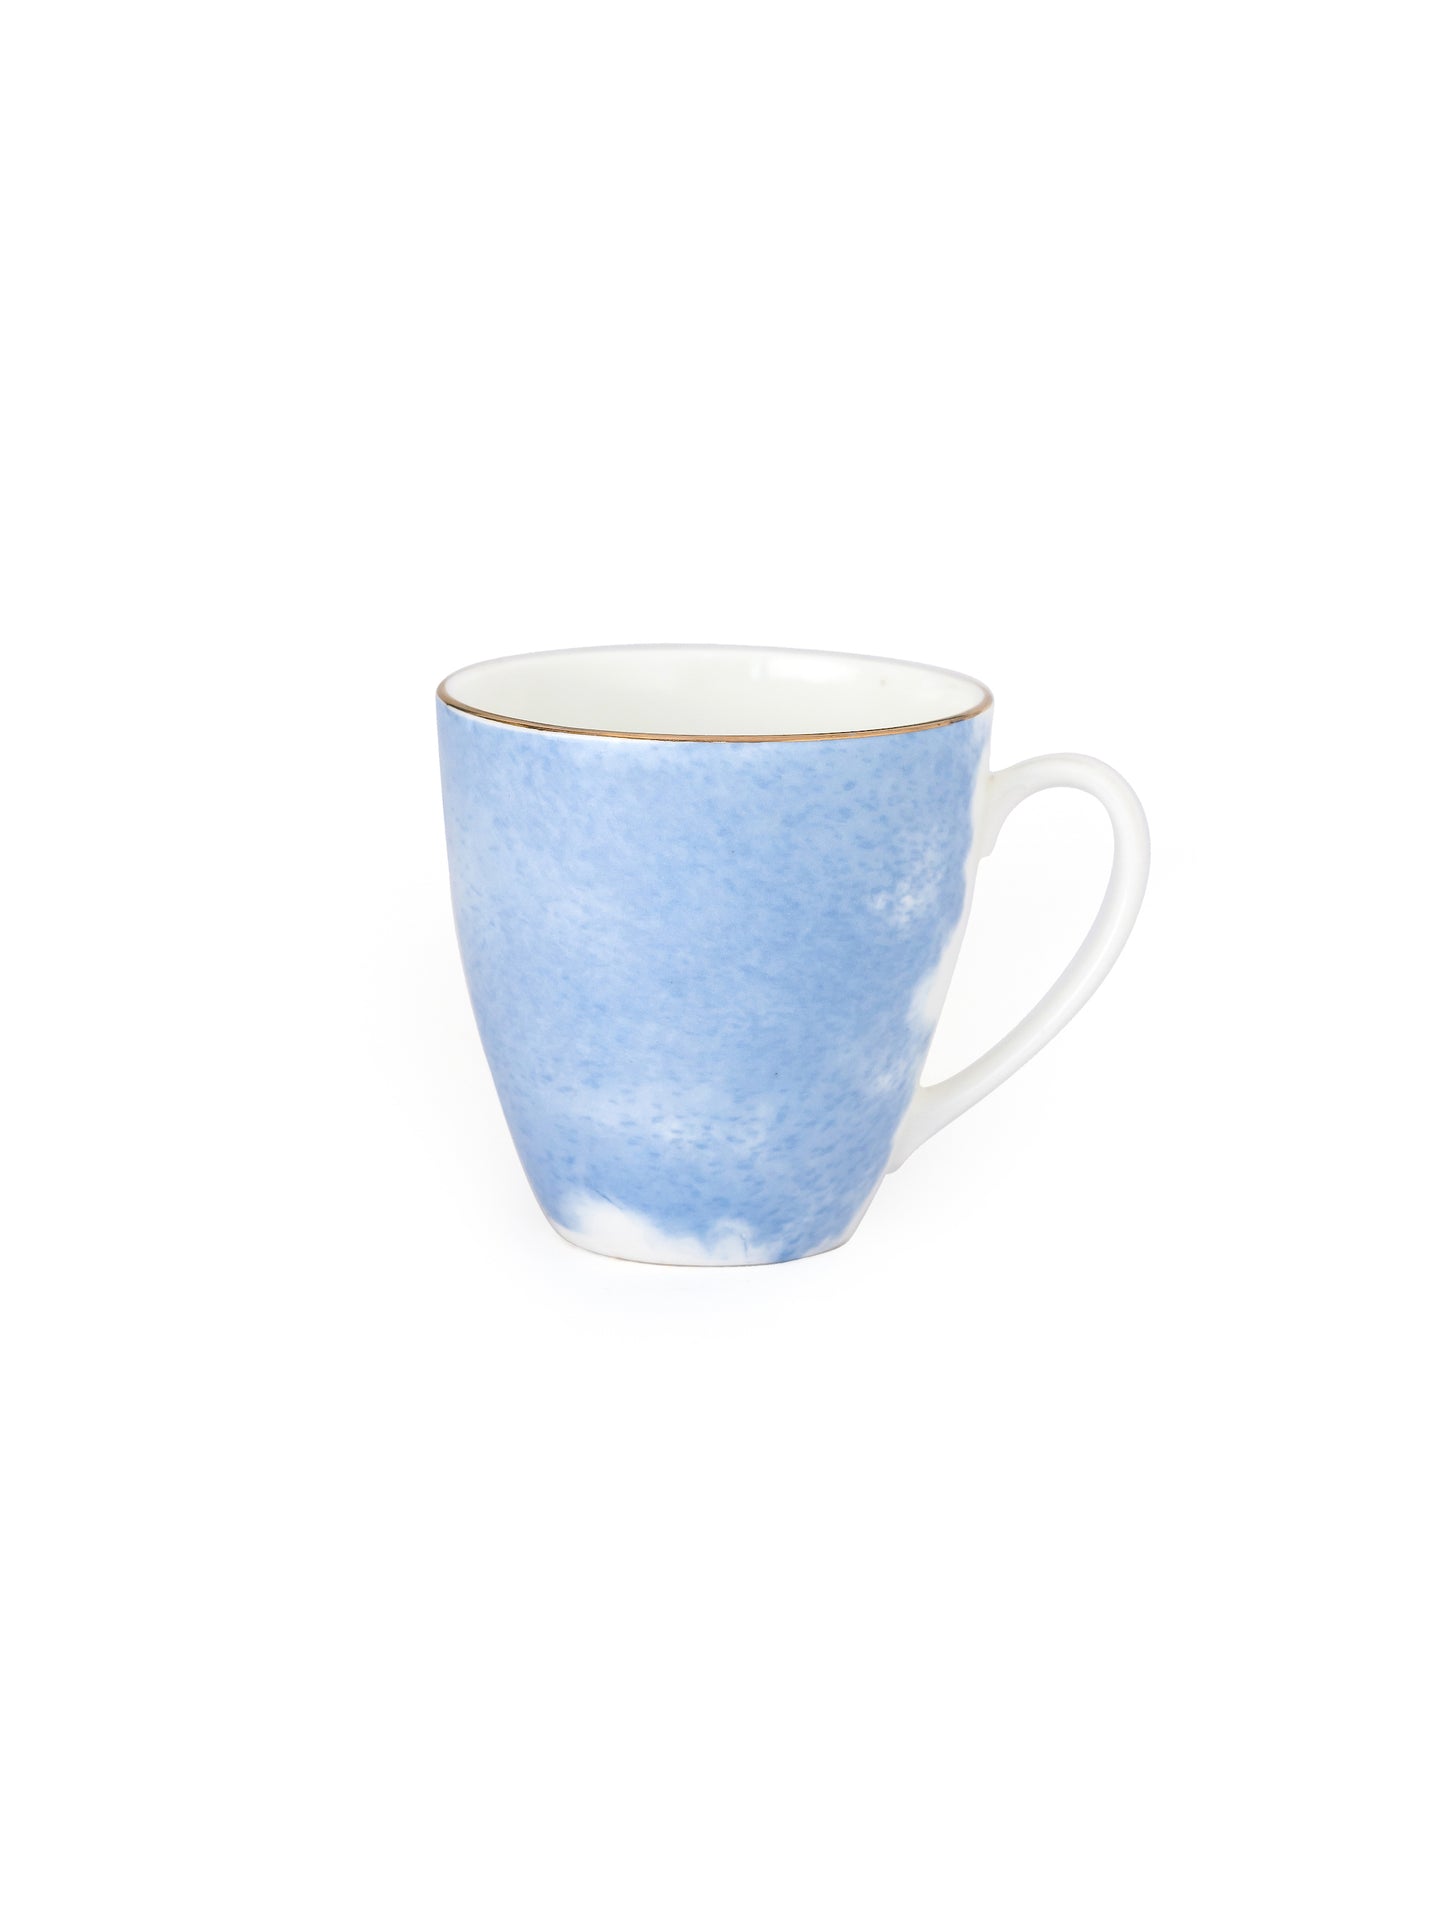 Excel Paradise Coffee & Tea Mugs, 220ml, Set of 6 (P503)